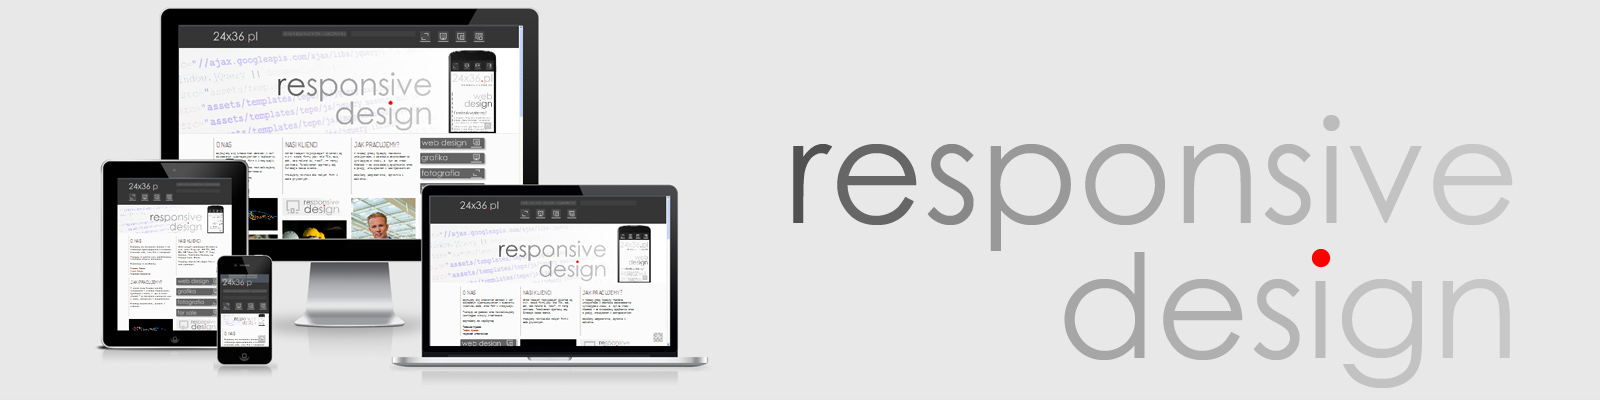 budowa stron internetowych responsive design projekty stron www responsywne strony witryny mobilne tanie